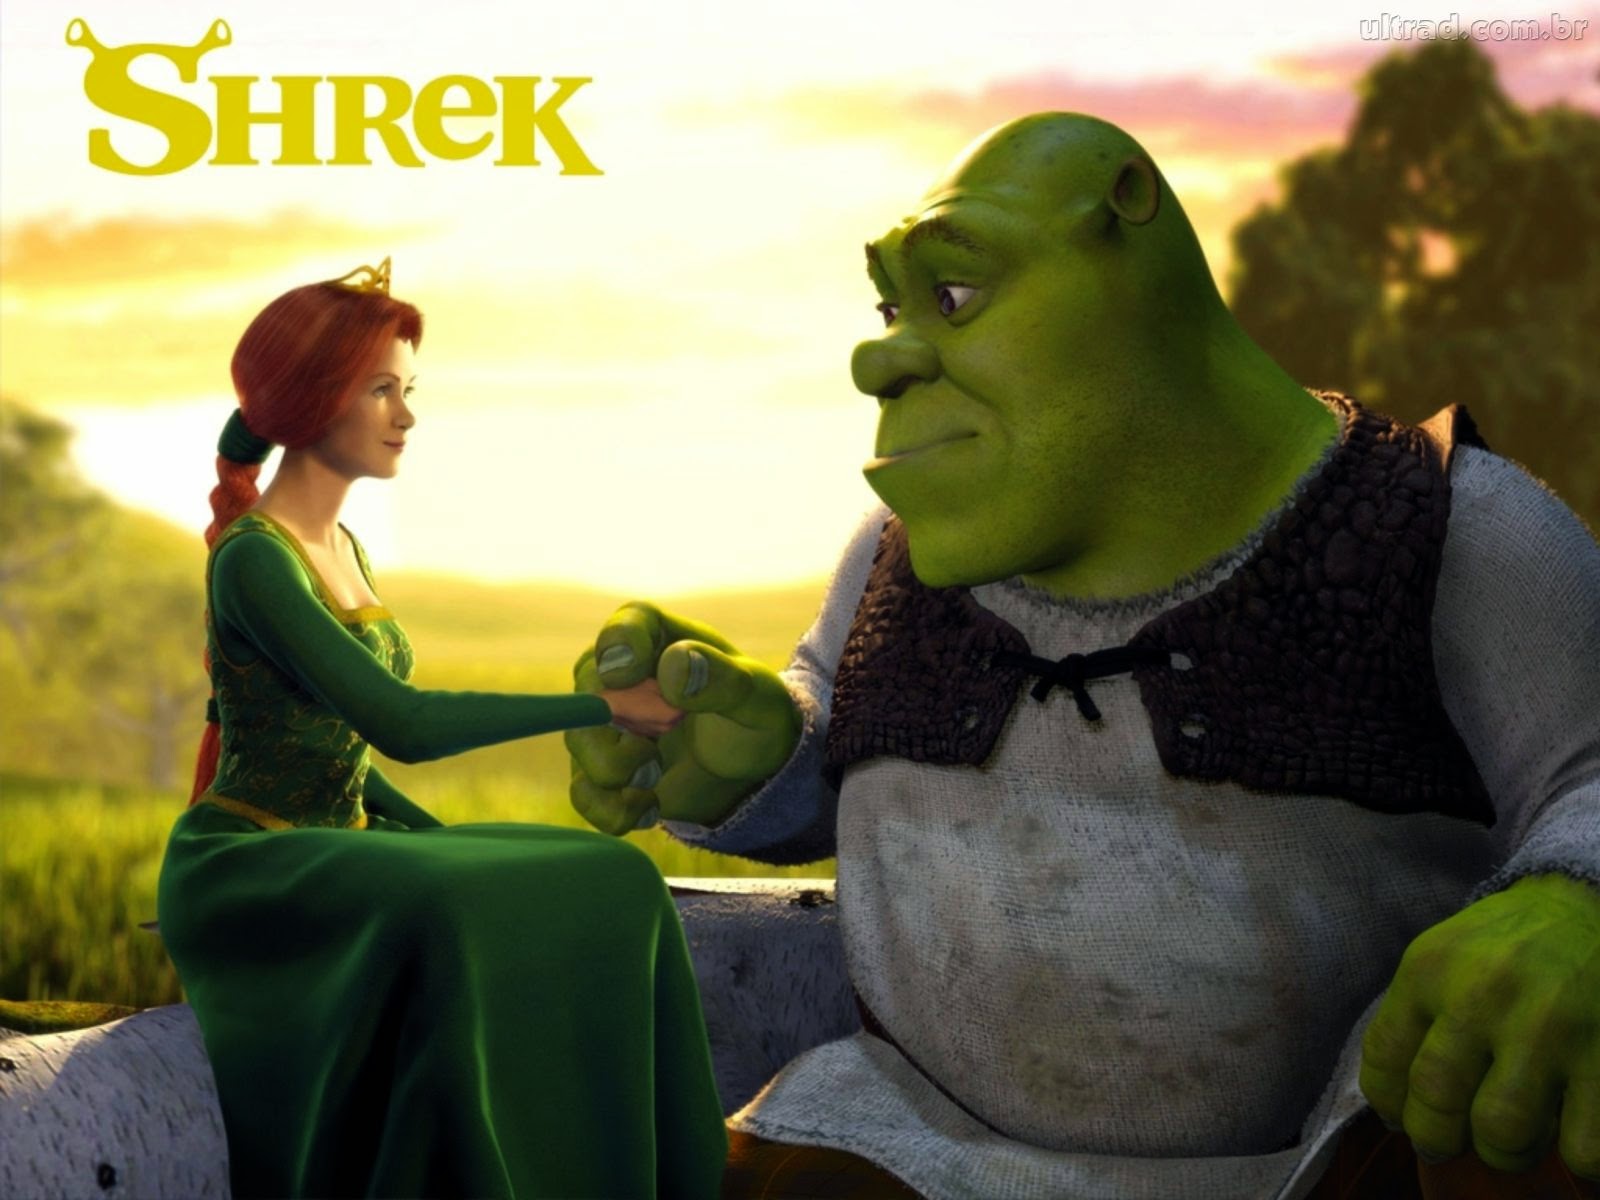 Shrek é sabedoria #shrek #shrek2 #sextou